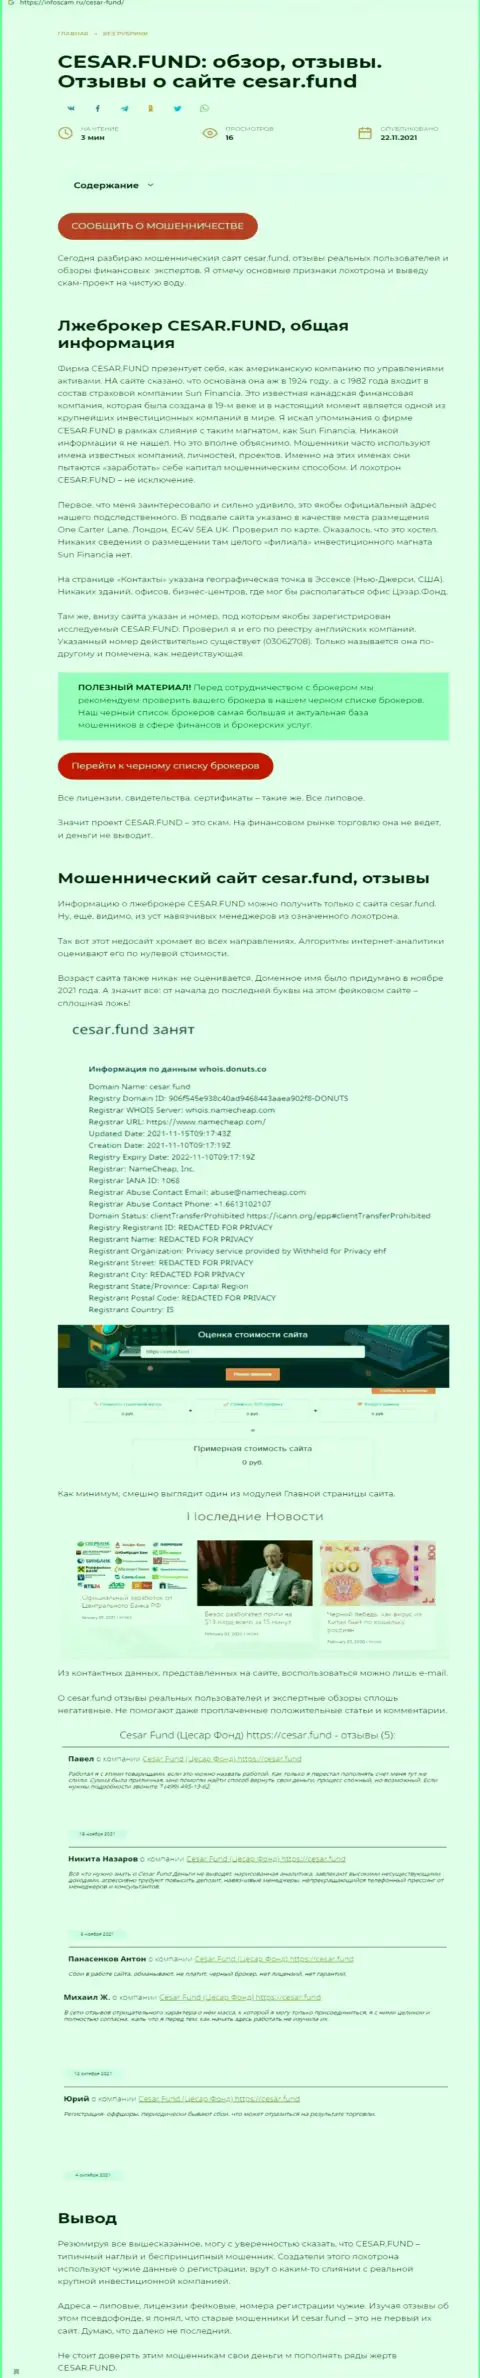 Разоблачающая, на просторах сети интернет, информация об мошеннических действиях Cesar Fund